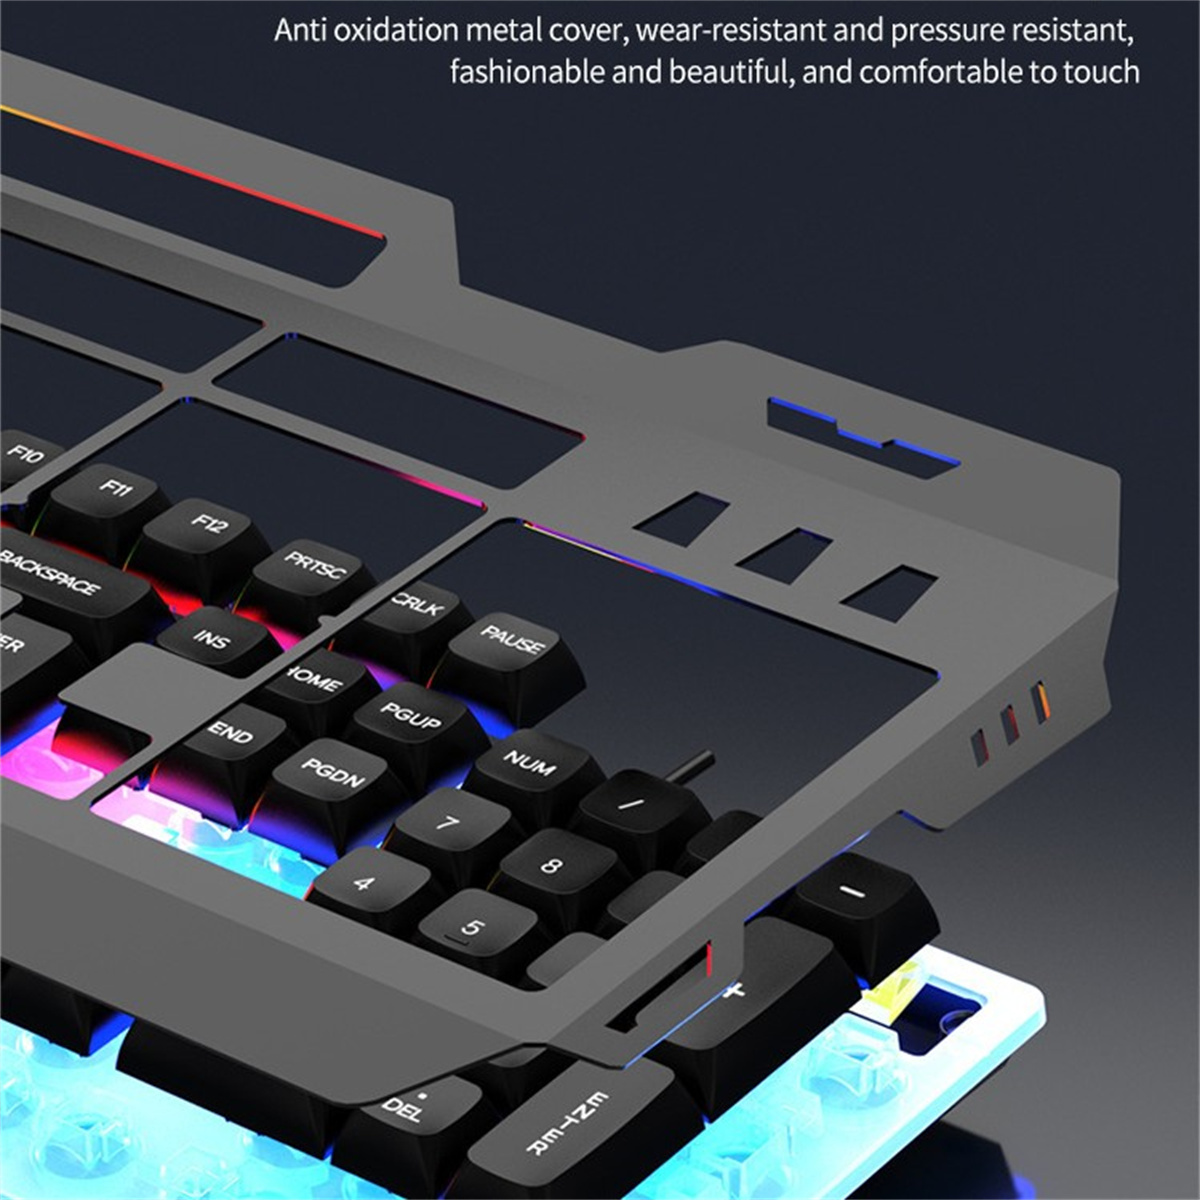 und Set, Maus-Set SYNTEK Tastatur Beleuchtetes Gefühls-Set, verkabeltes Schwarz Tastatur- und Maus Schwarz USB-Set mechanisches